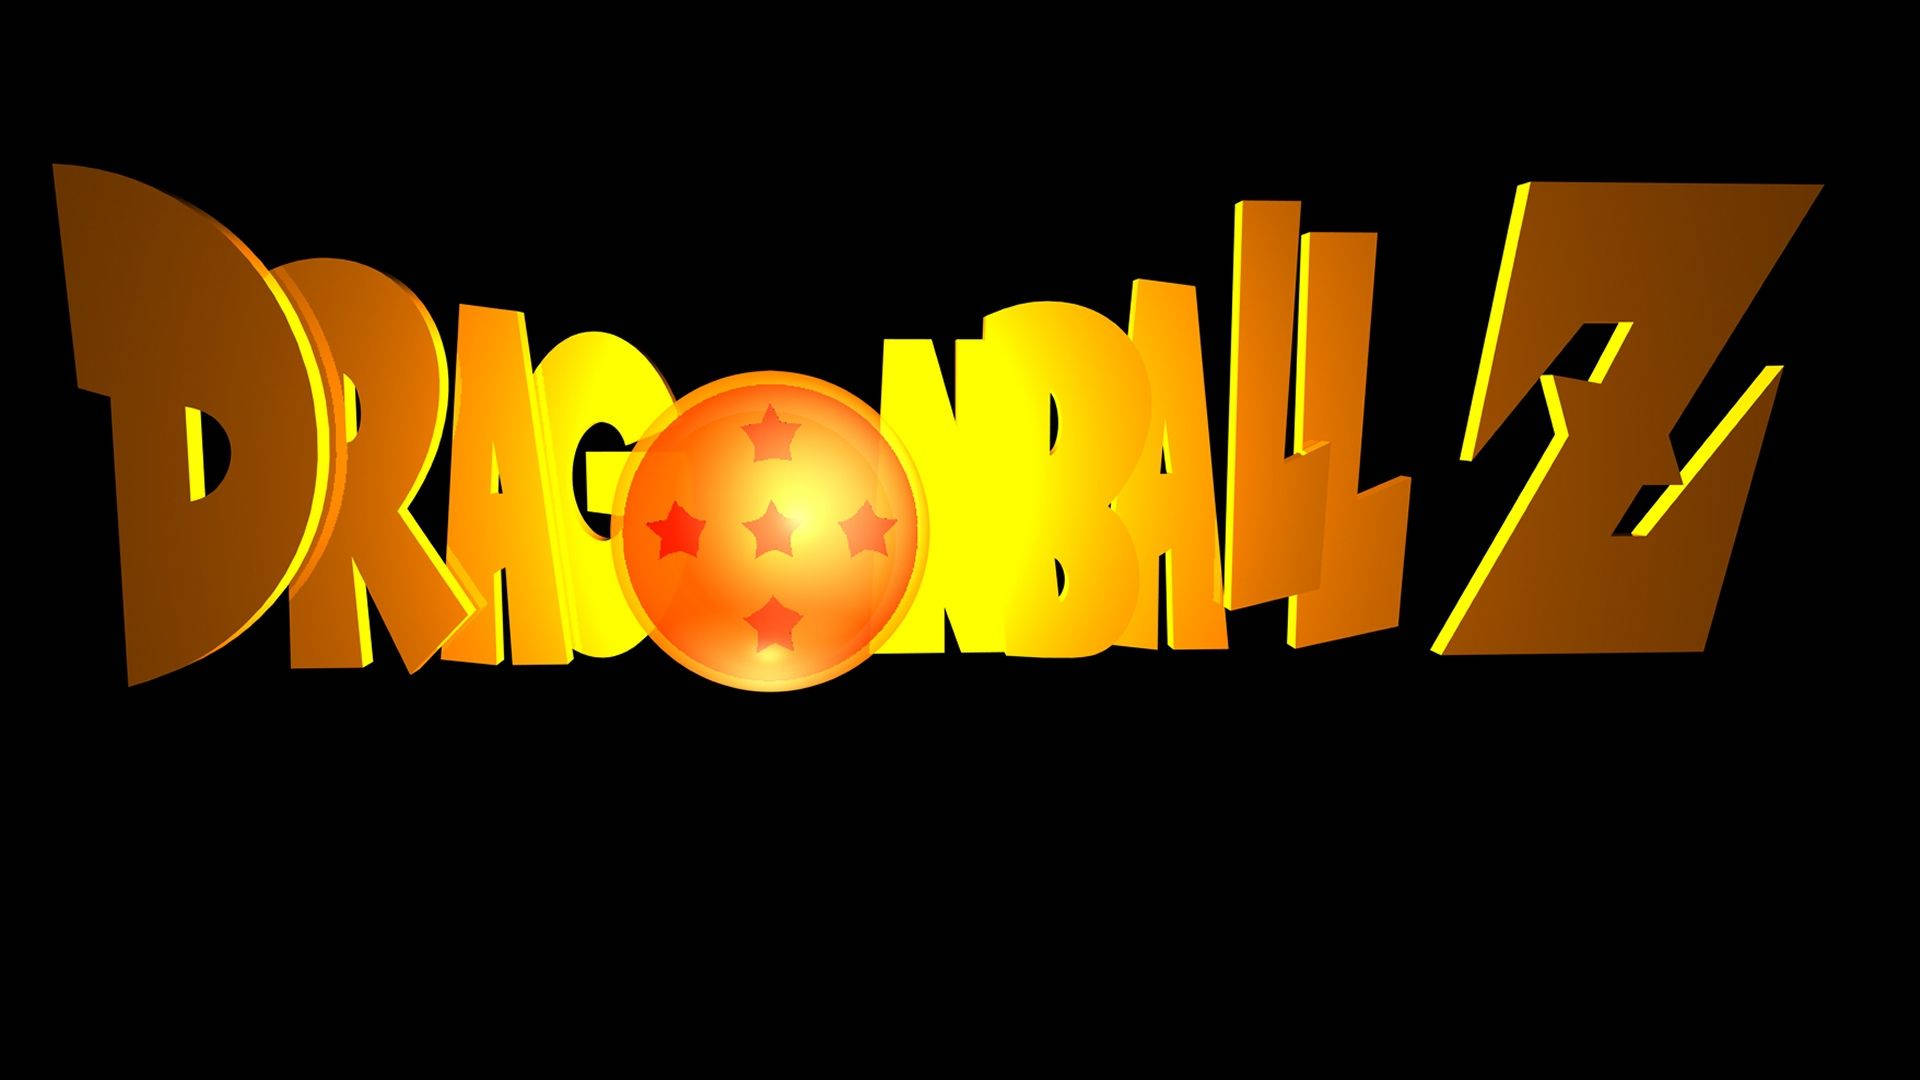 Dragonball Z-logotypen, En Ikonisk Symbol Från 90-talet. Wallpaper